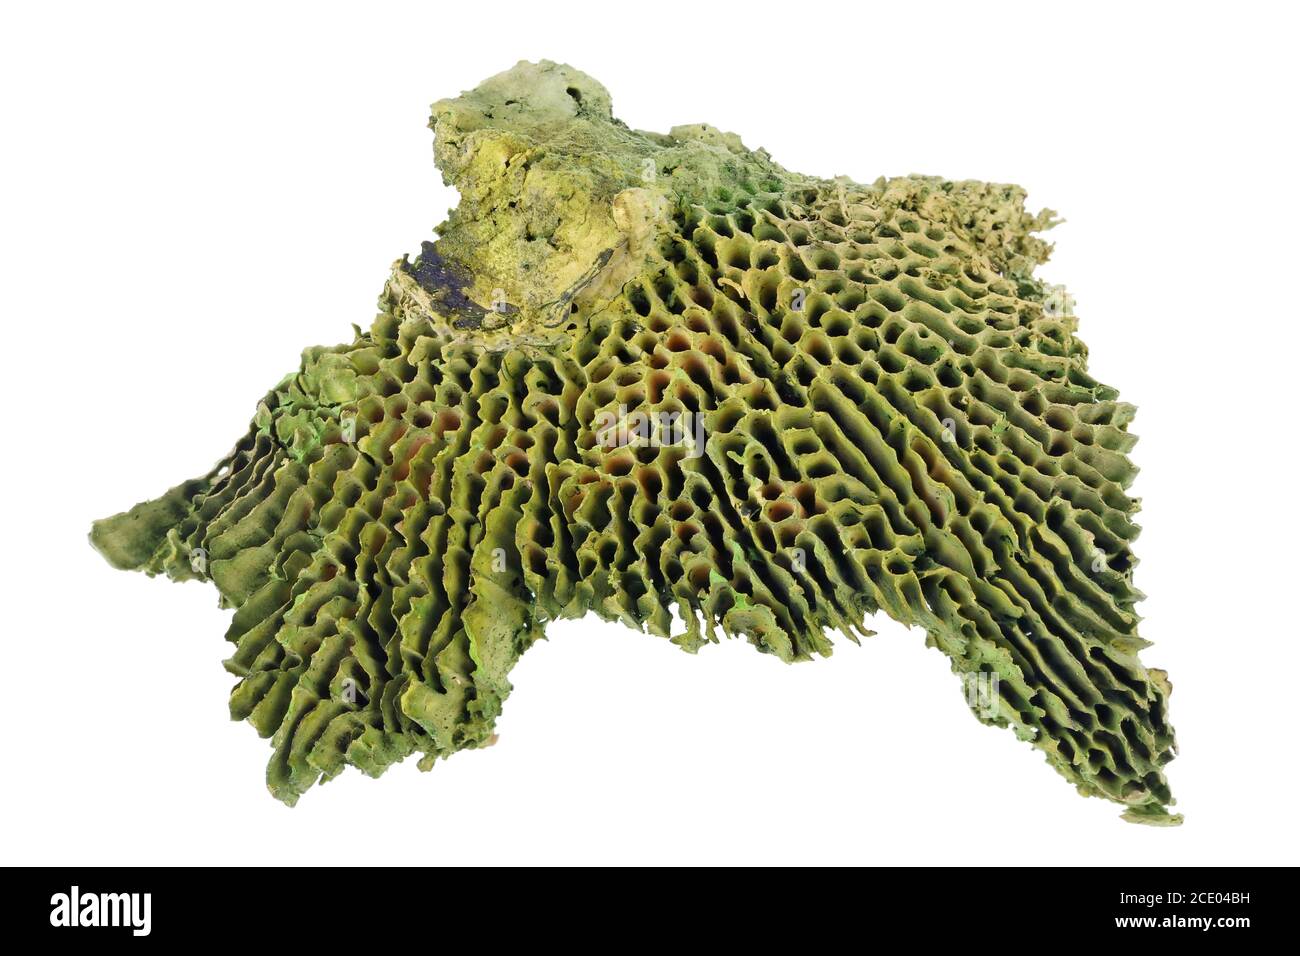 Giftige grüne getrocknete Pilze werden verwendet, um halluzinogene Mischungen zu bilden Isoliertes Makro Stockfoto